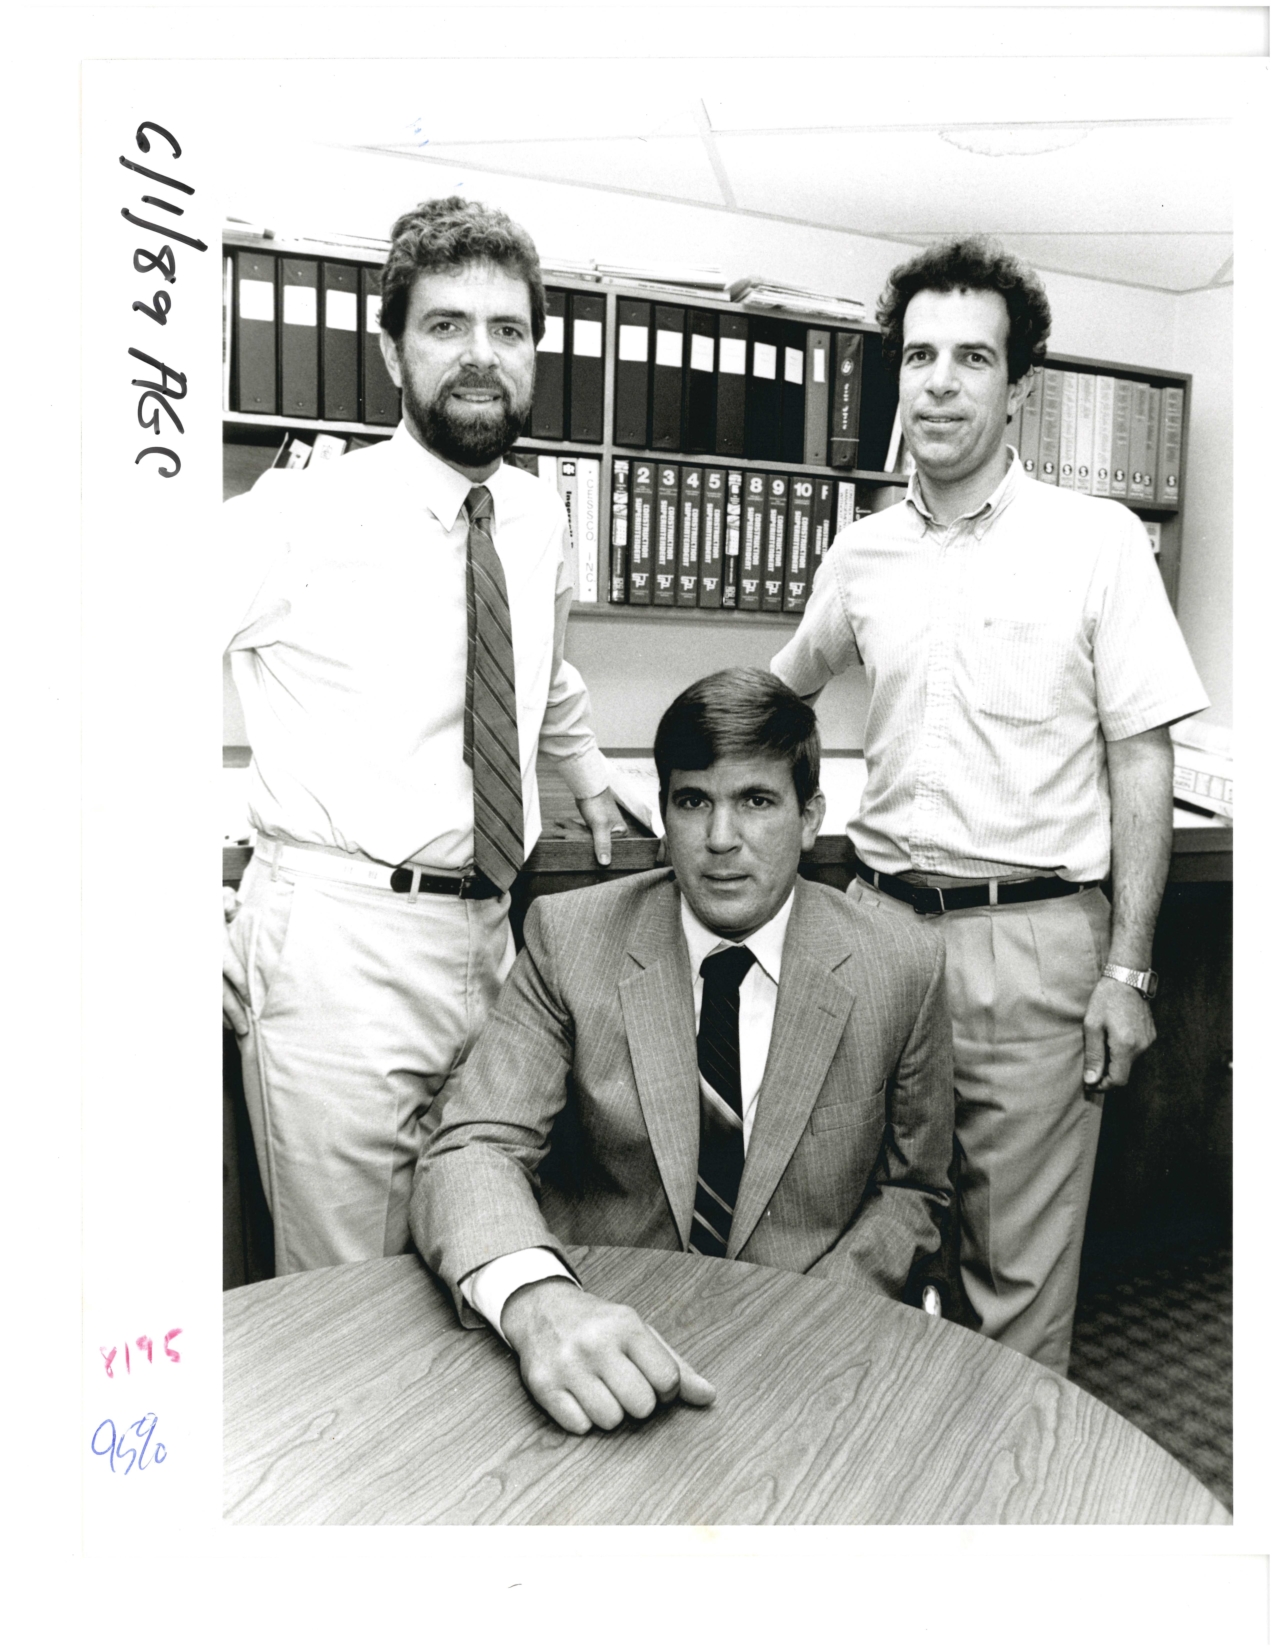 Schommer sons at work 1989